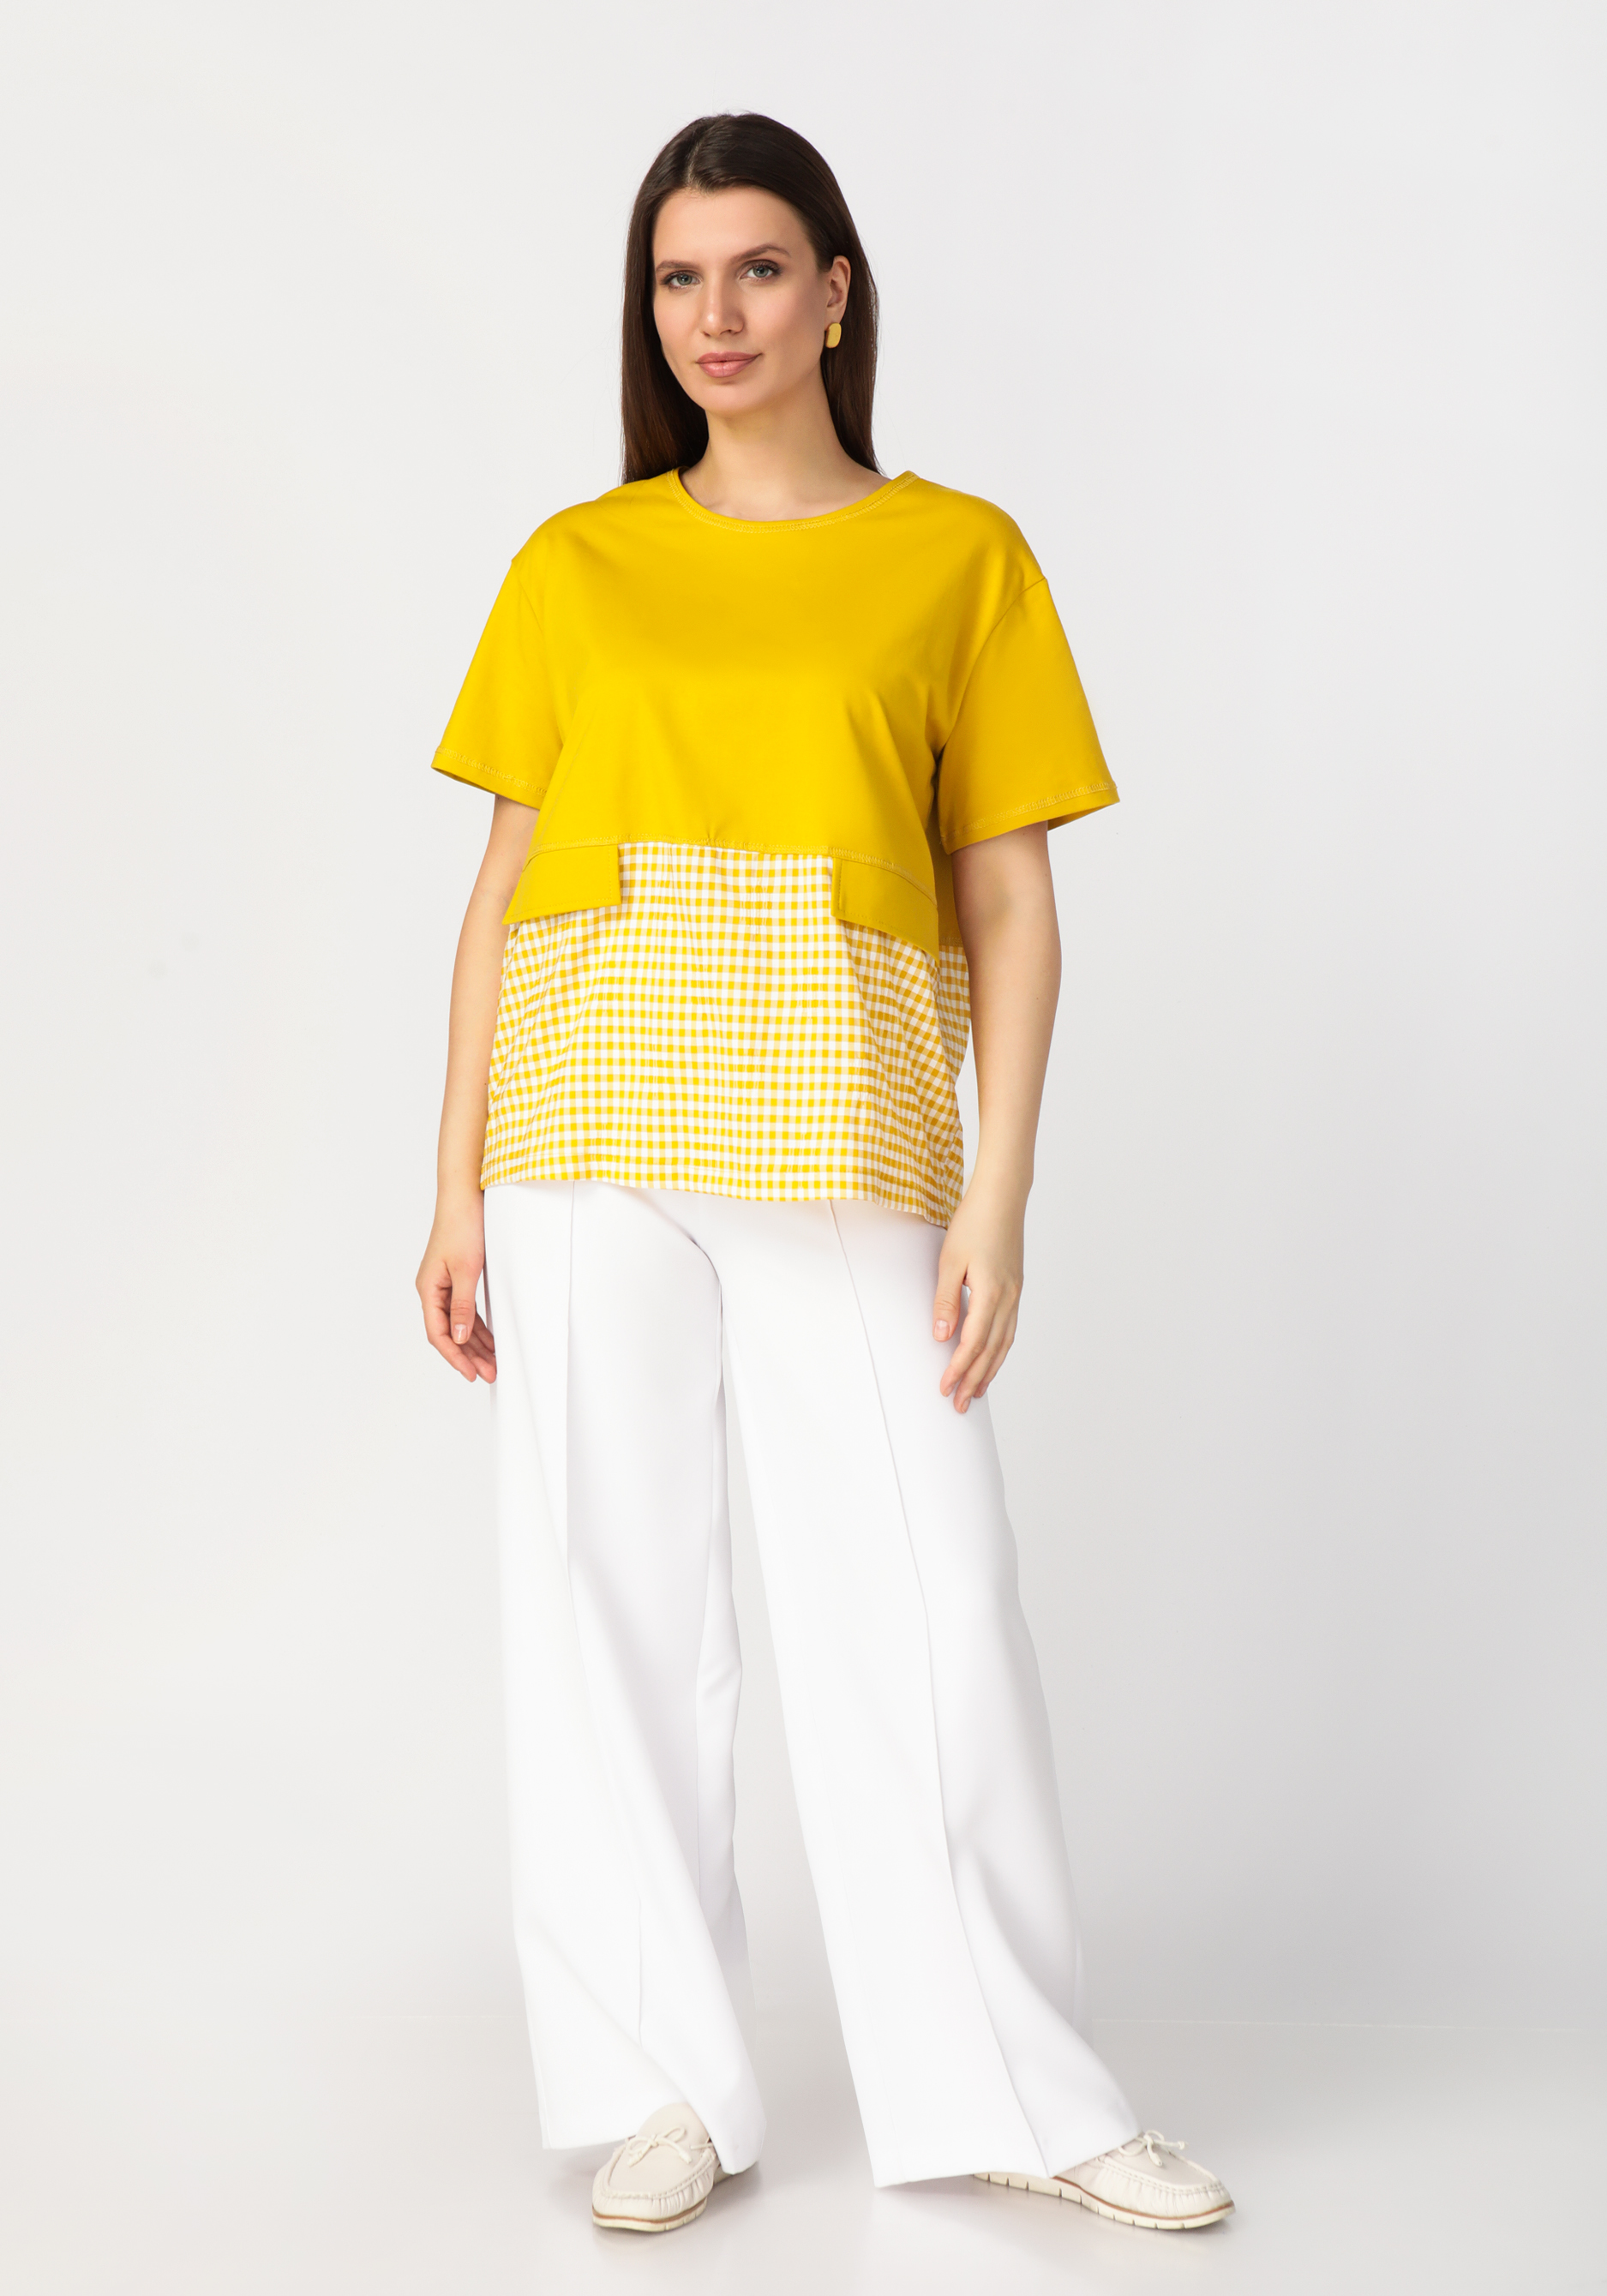 Блуза комбинированная из разных тканей Frida, размер 58-60, цвет желтый - фото 10